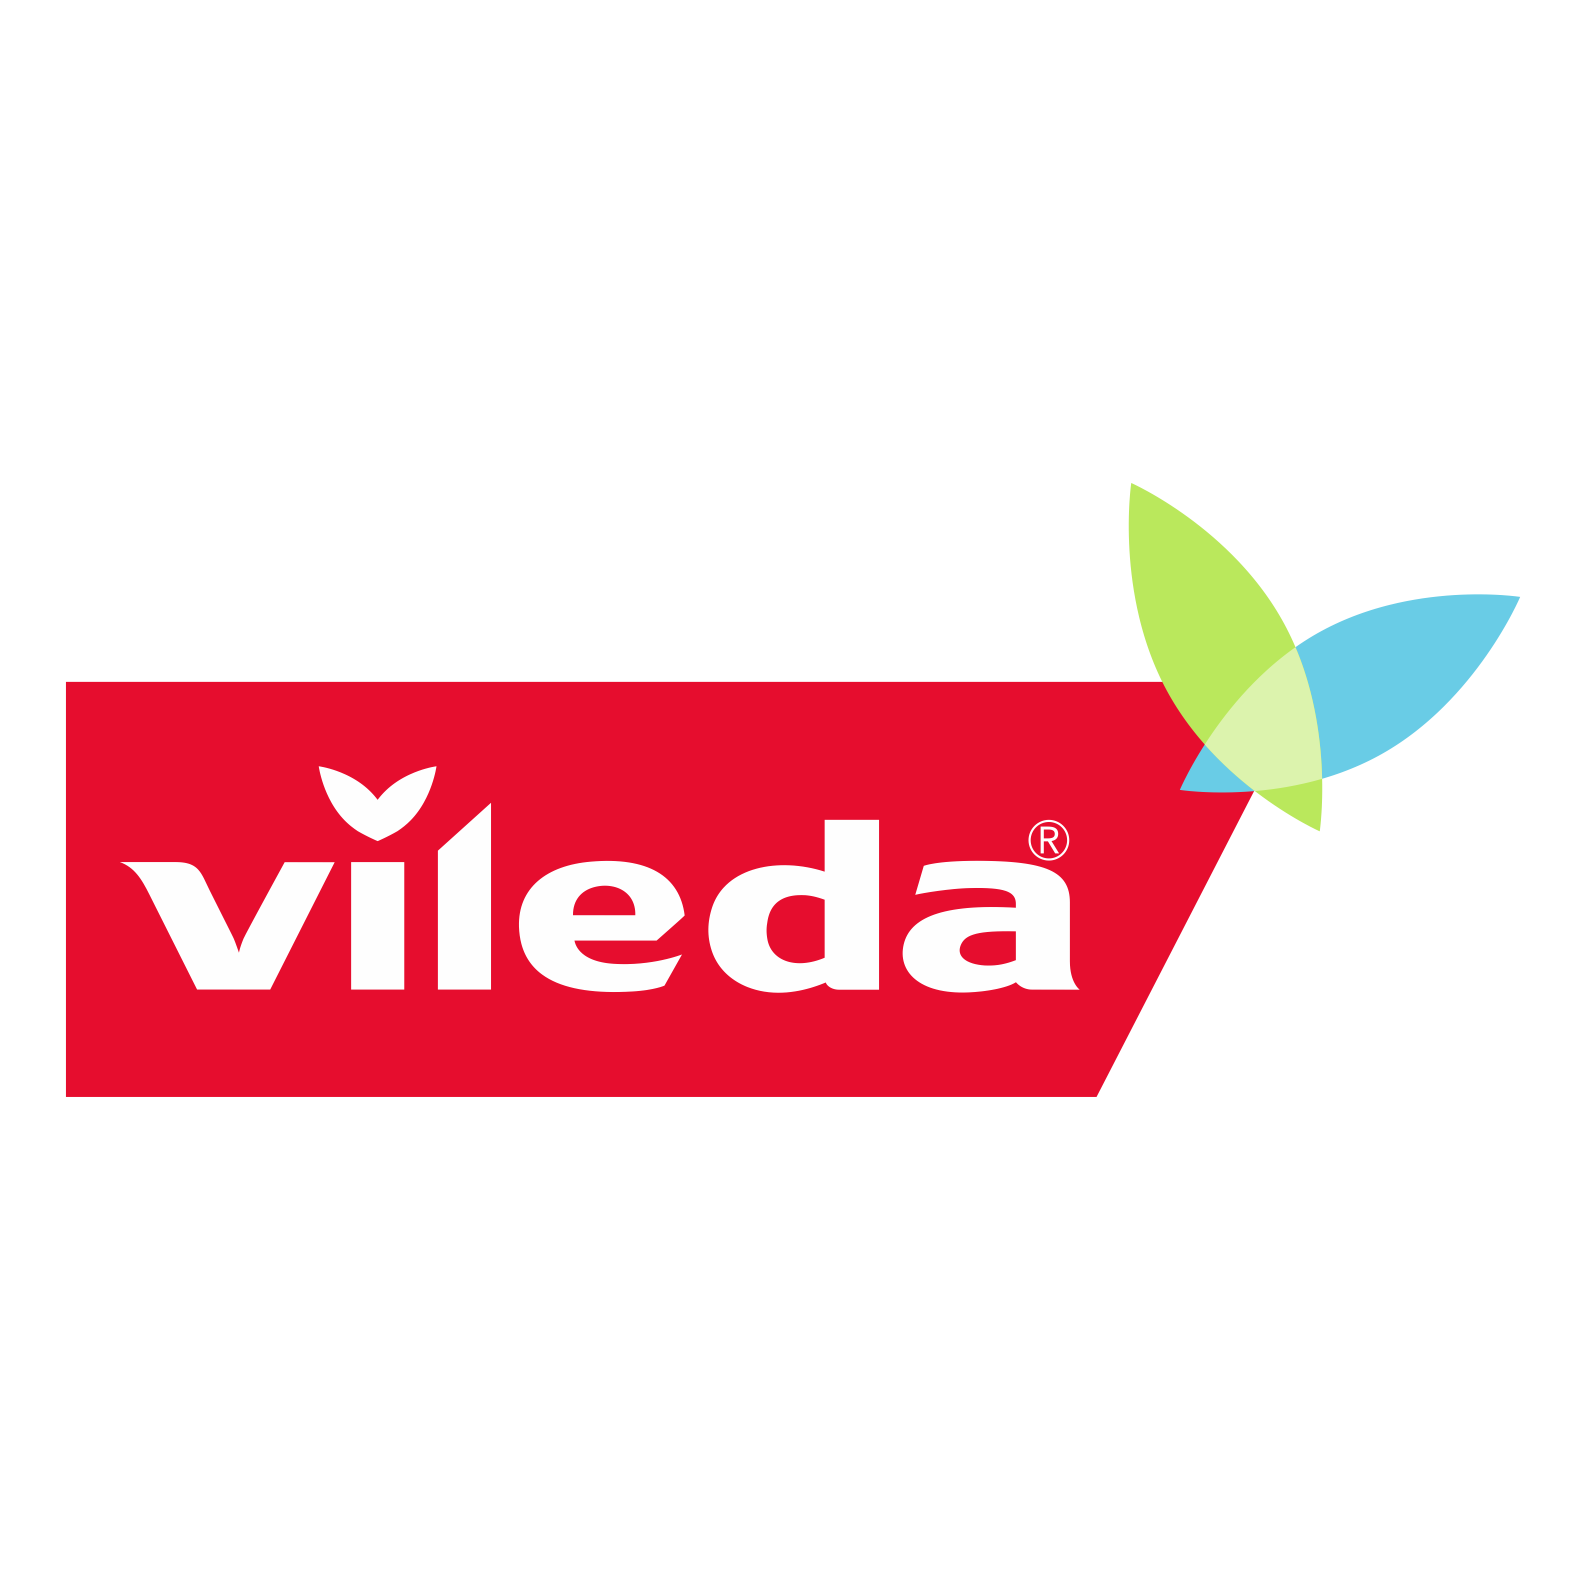 Vileda Logo